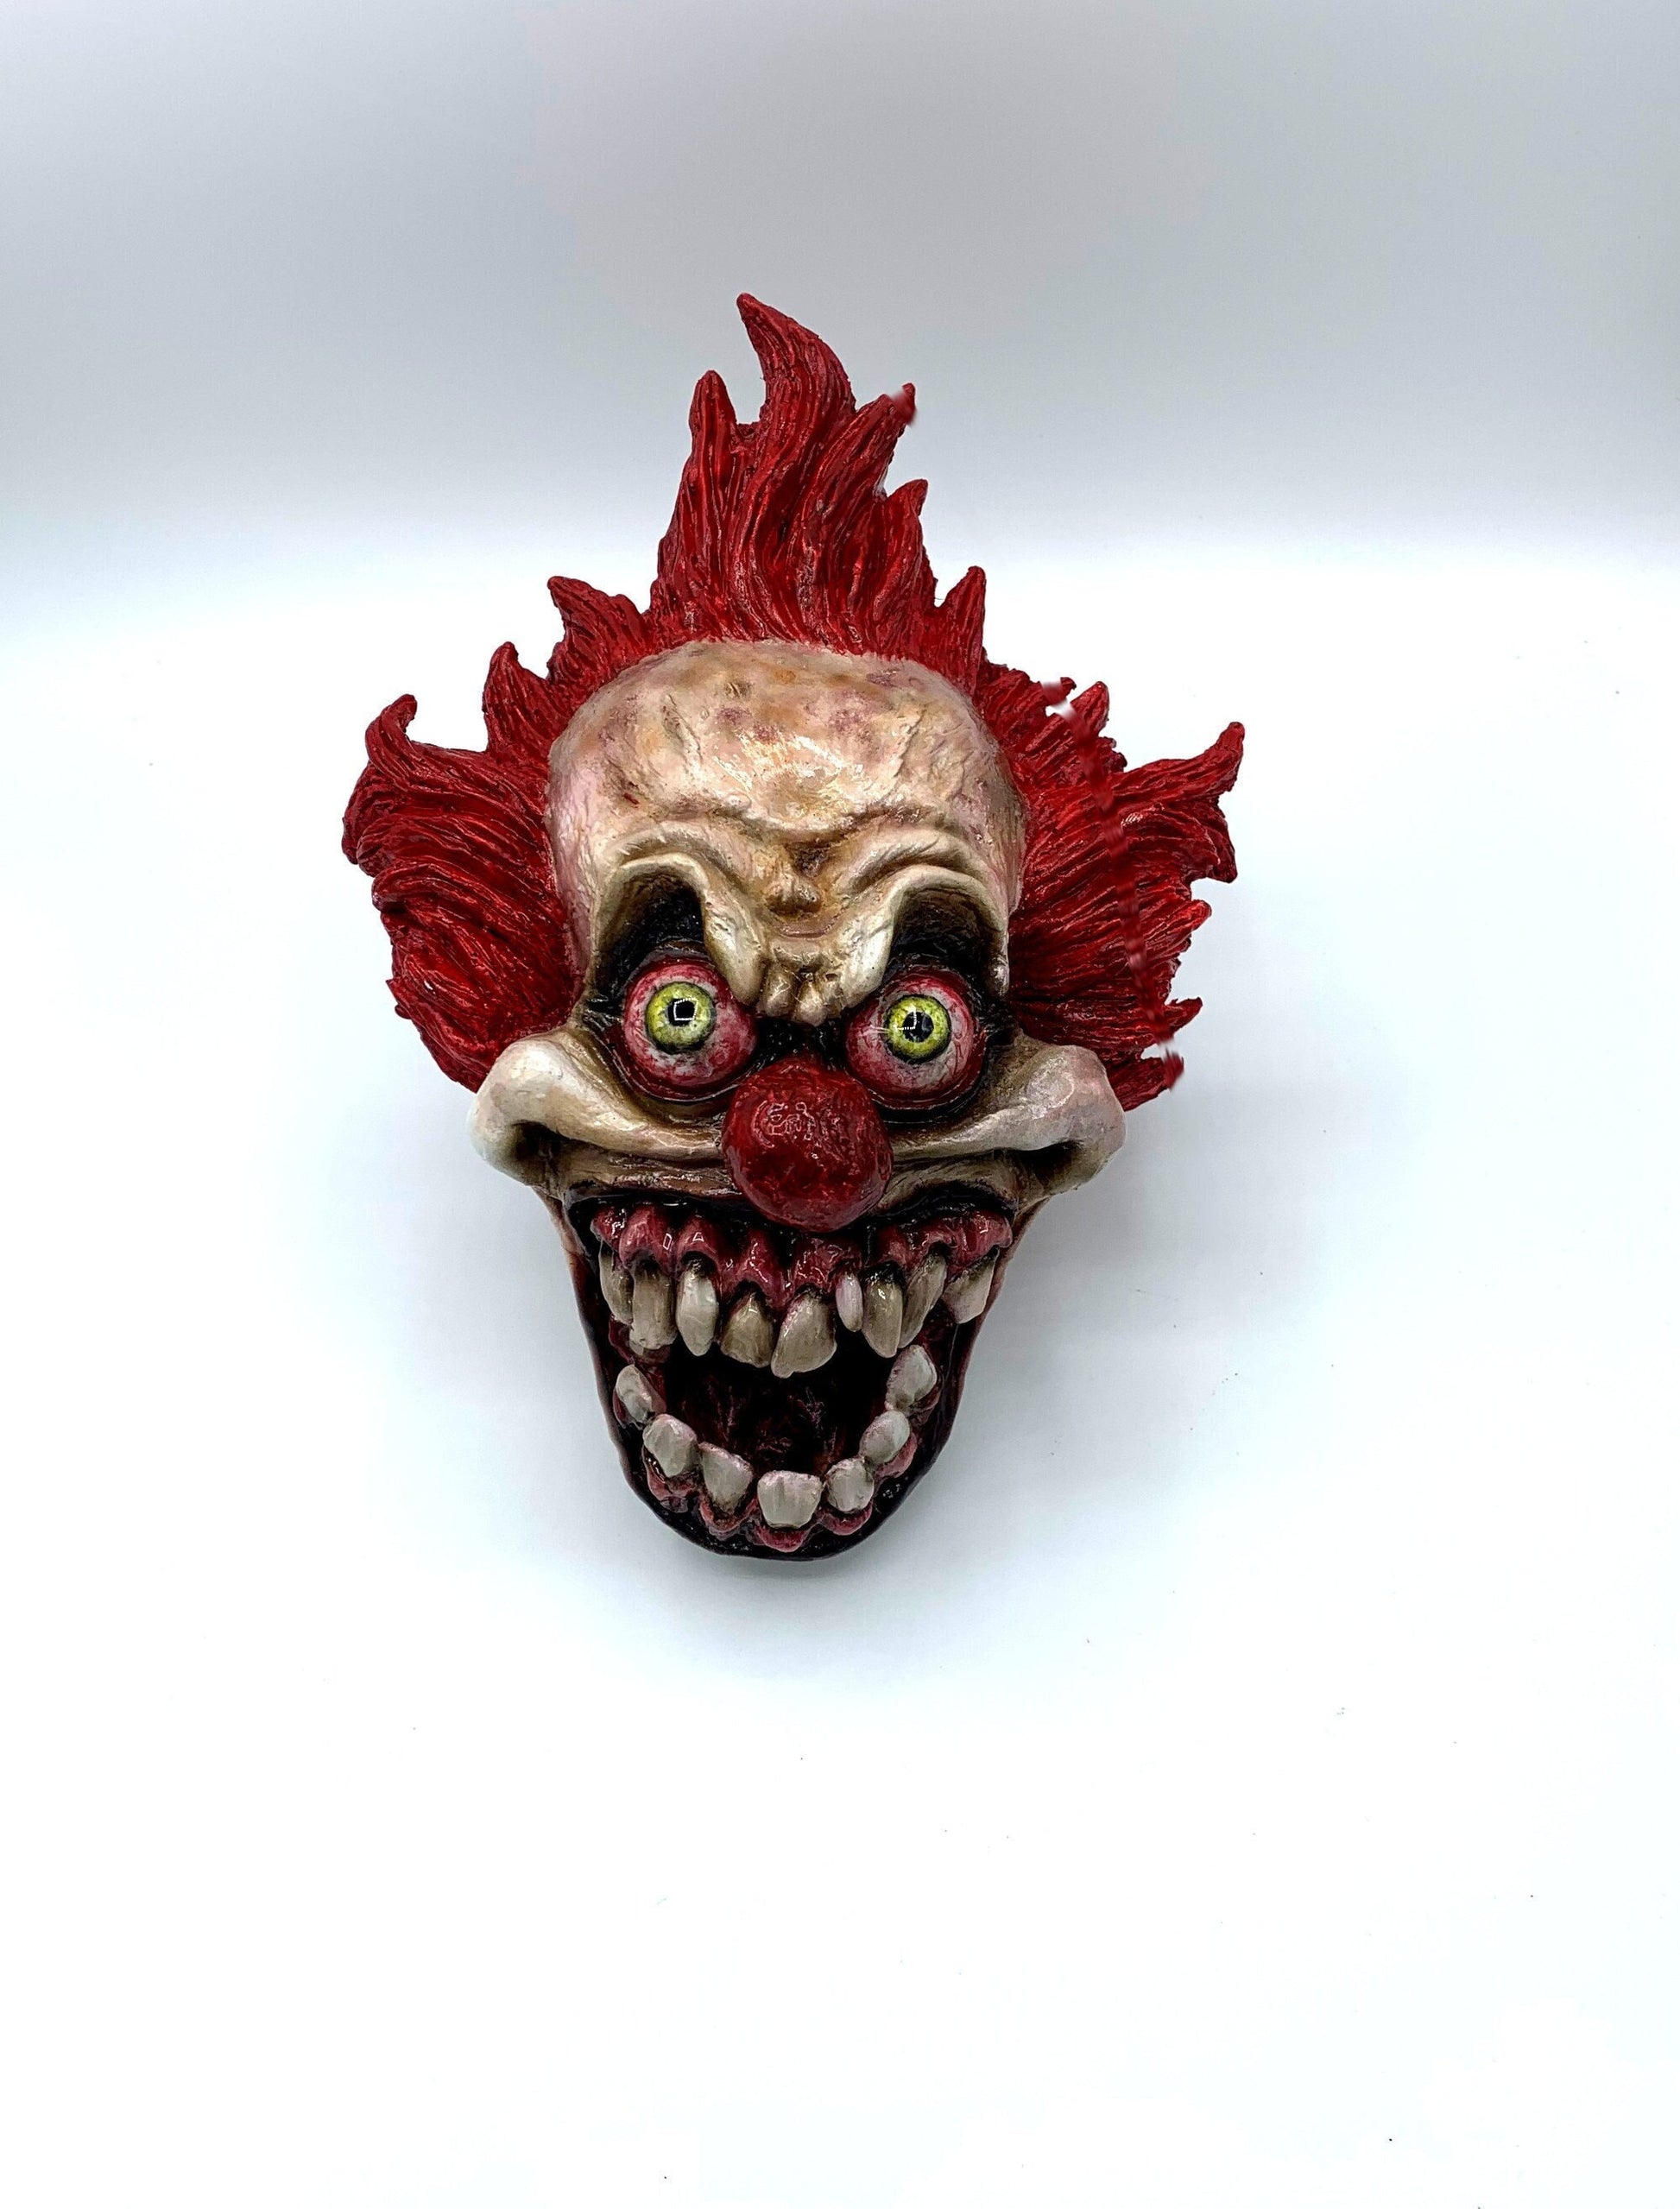 Aztec Death Whistle - the Clown